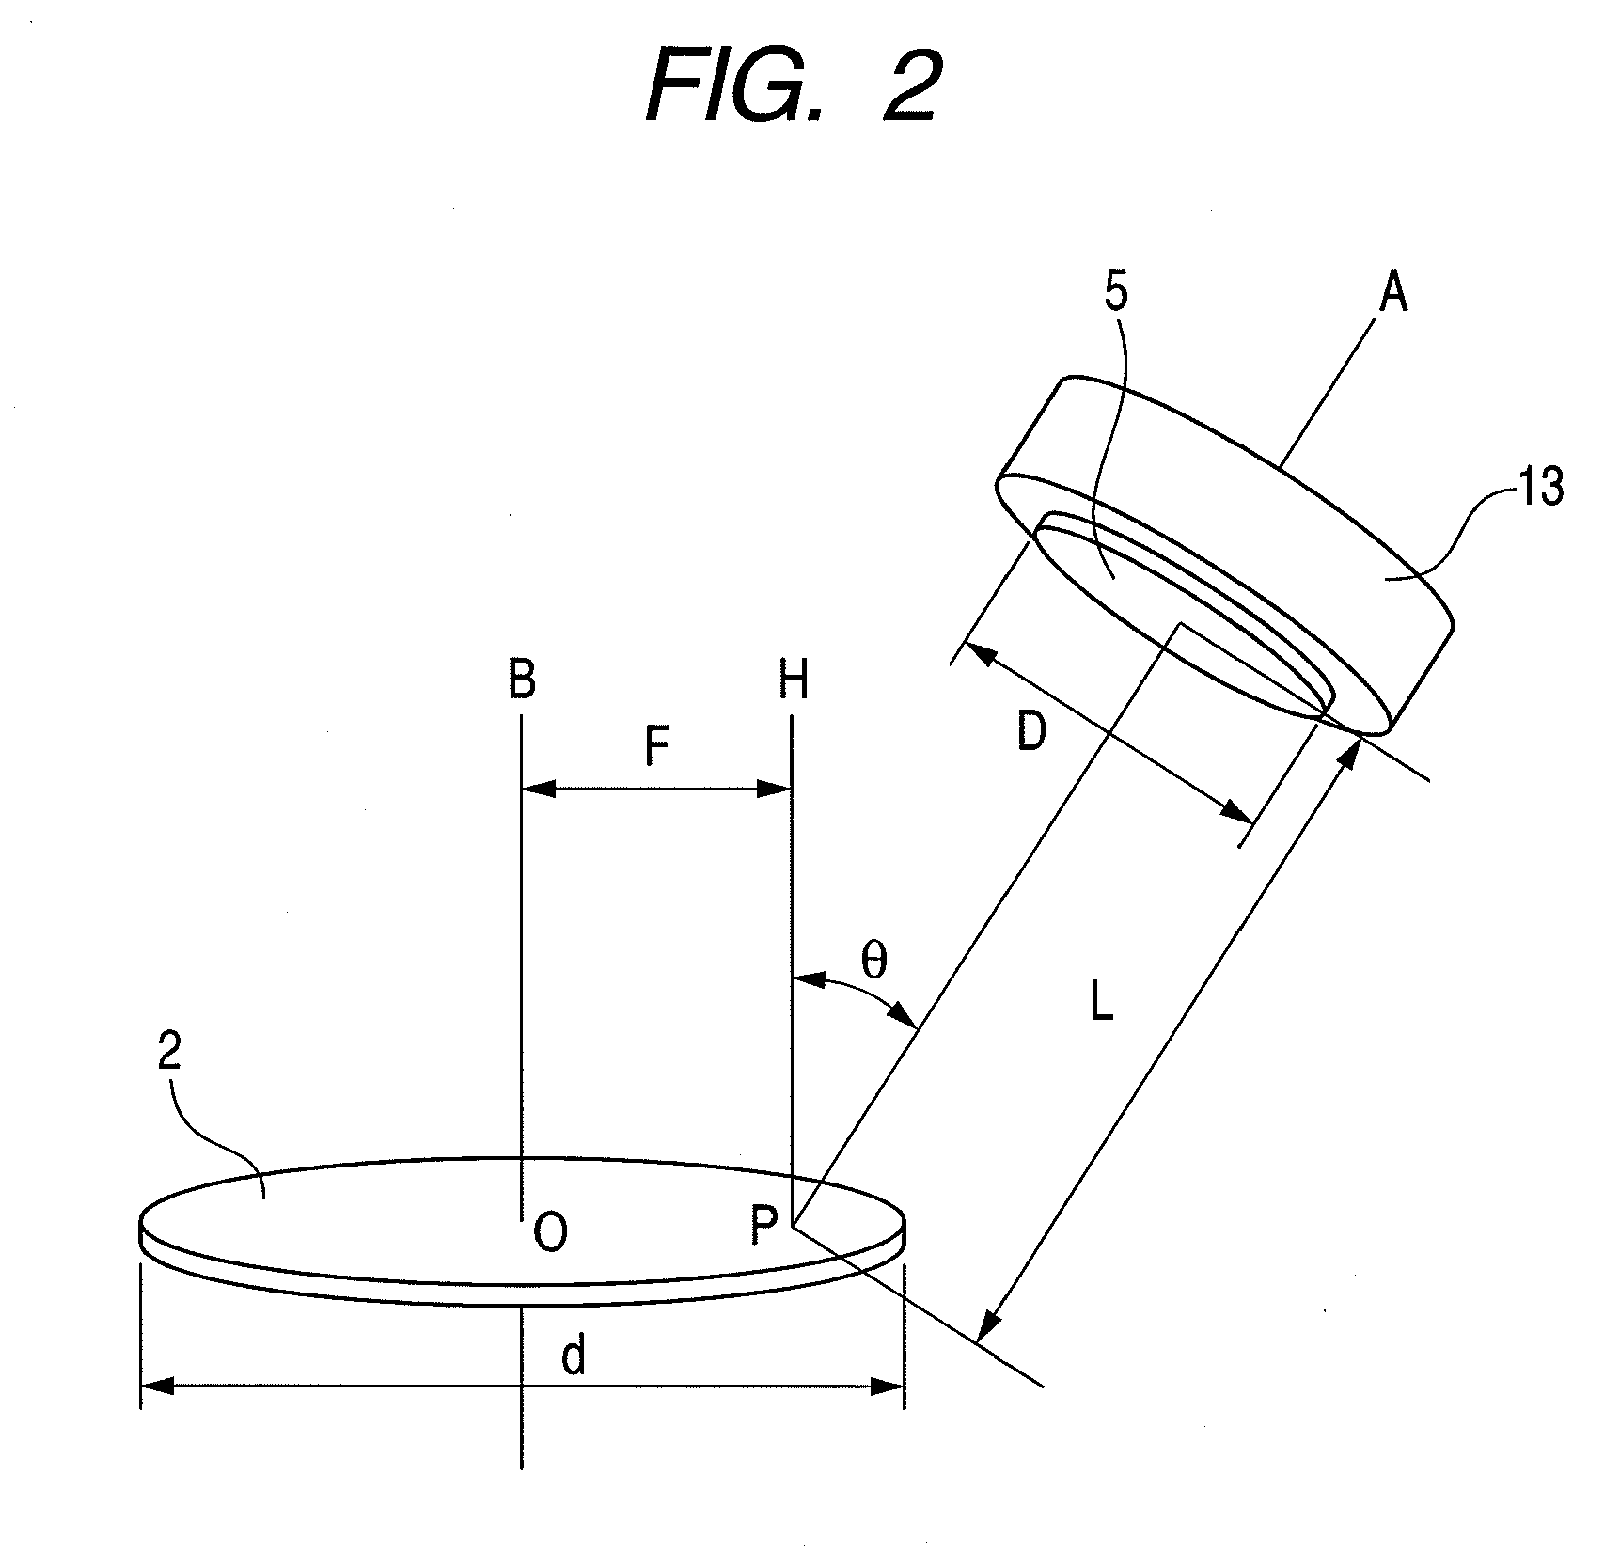 Vacuum thin film forming apparatus